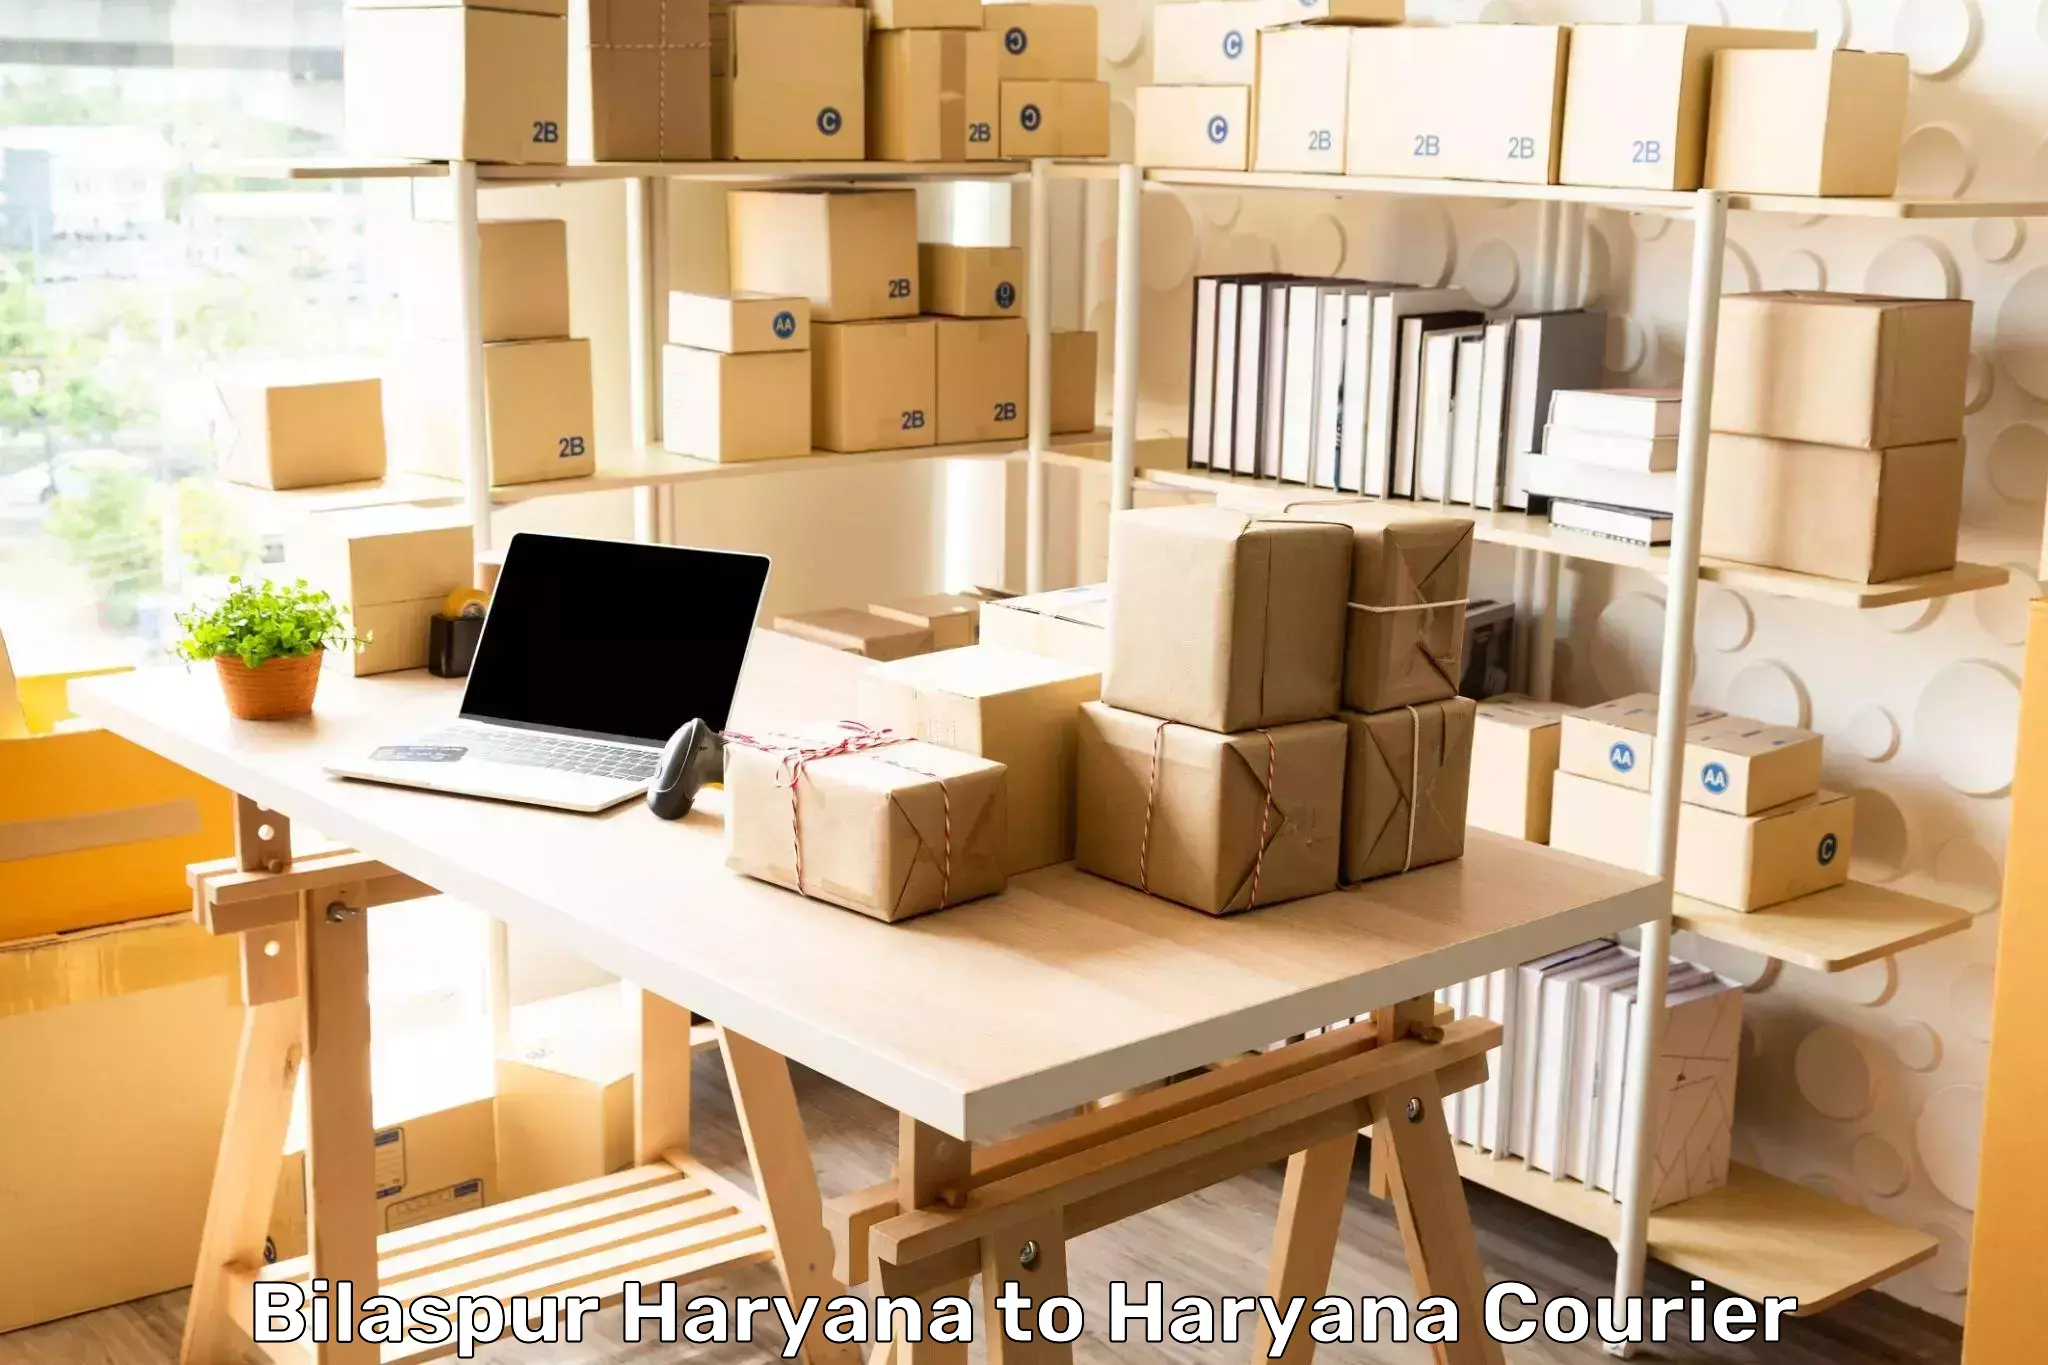 On-demand courier Bilaspur Haryana to IIIT Sonepat